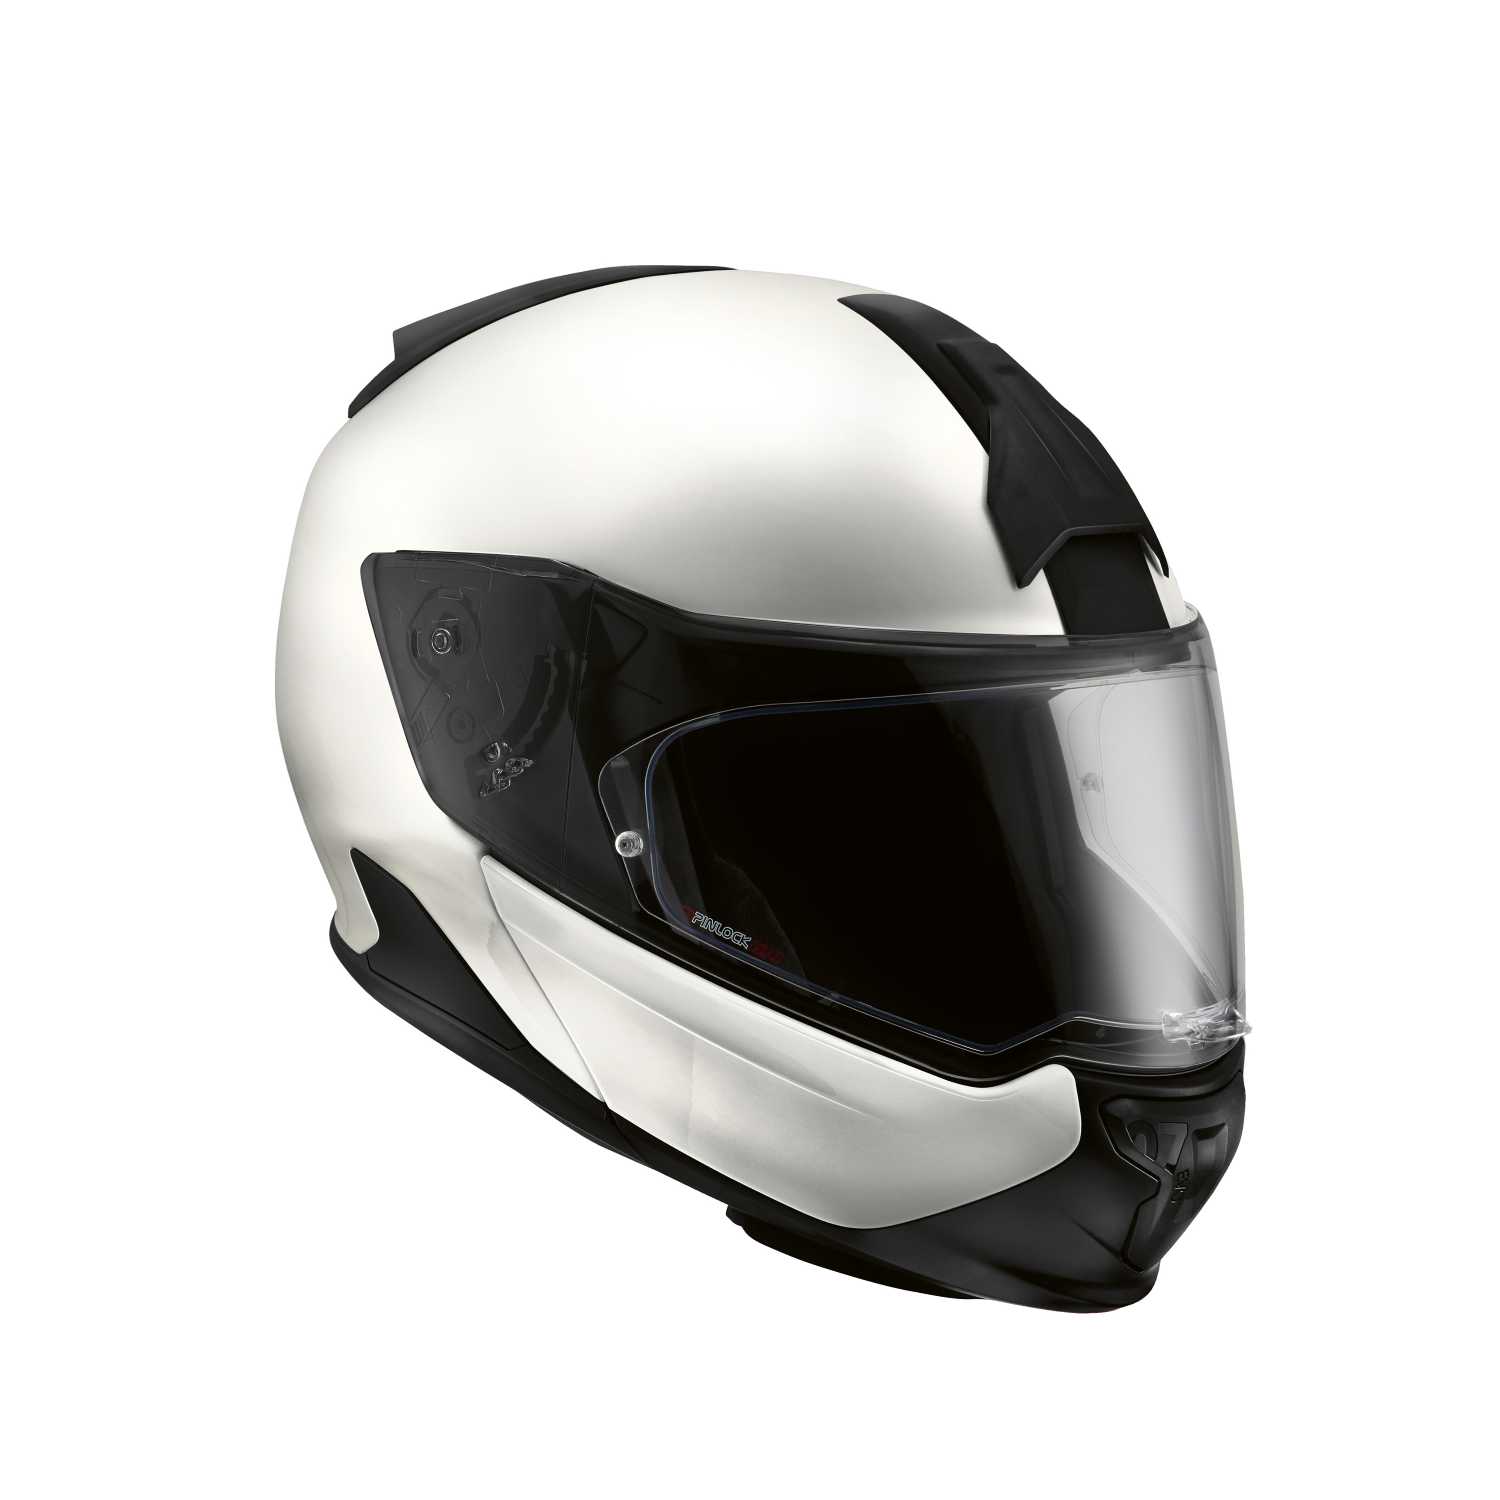 BMW Motorrad Rider Equipment 2022. Helmet System 7 Evo Silver. (12/2021)